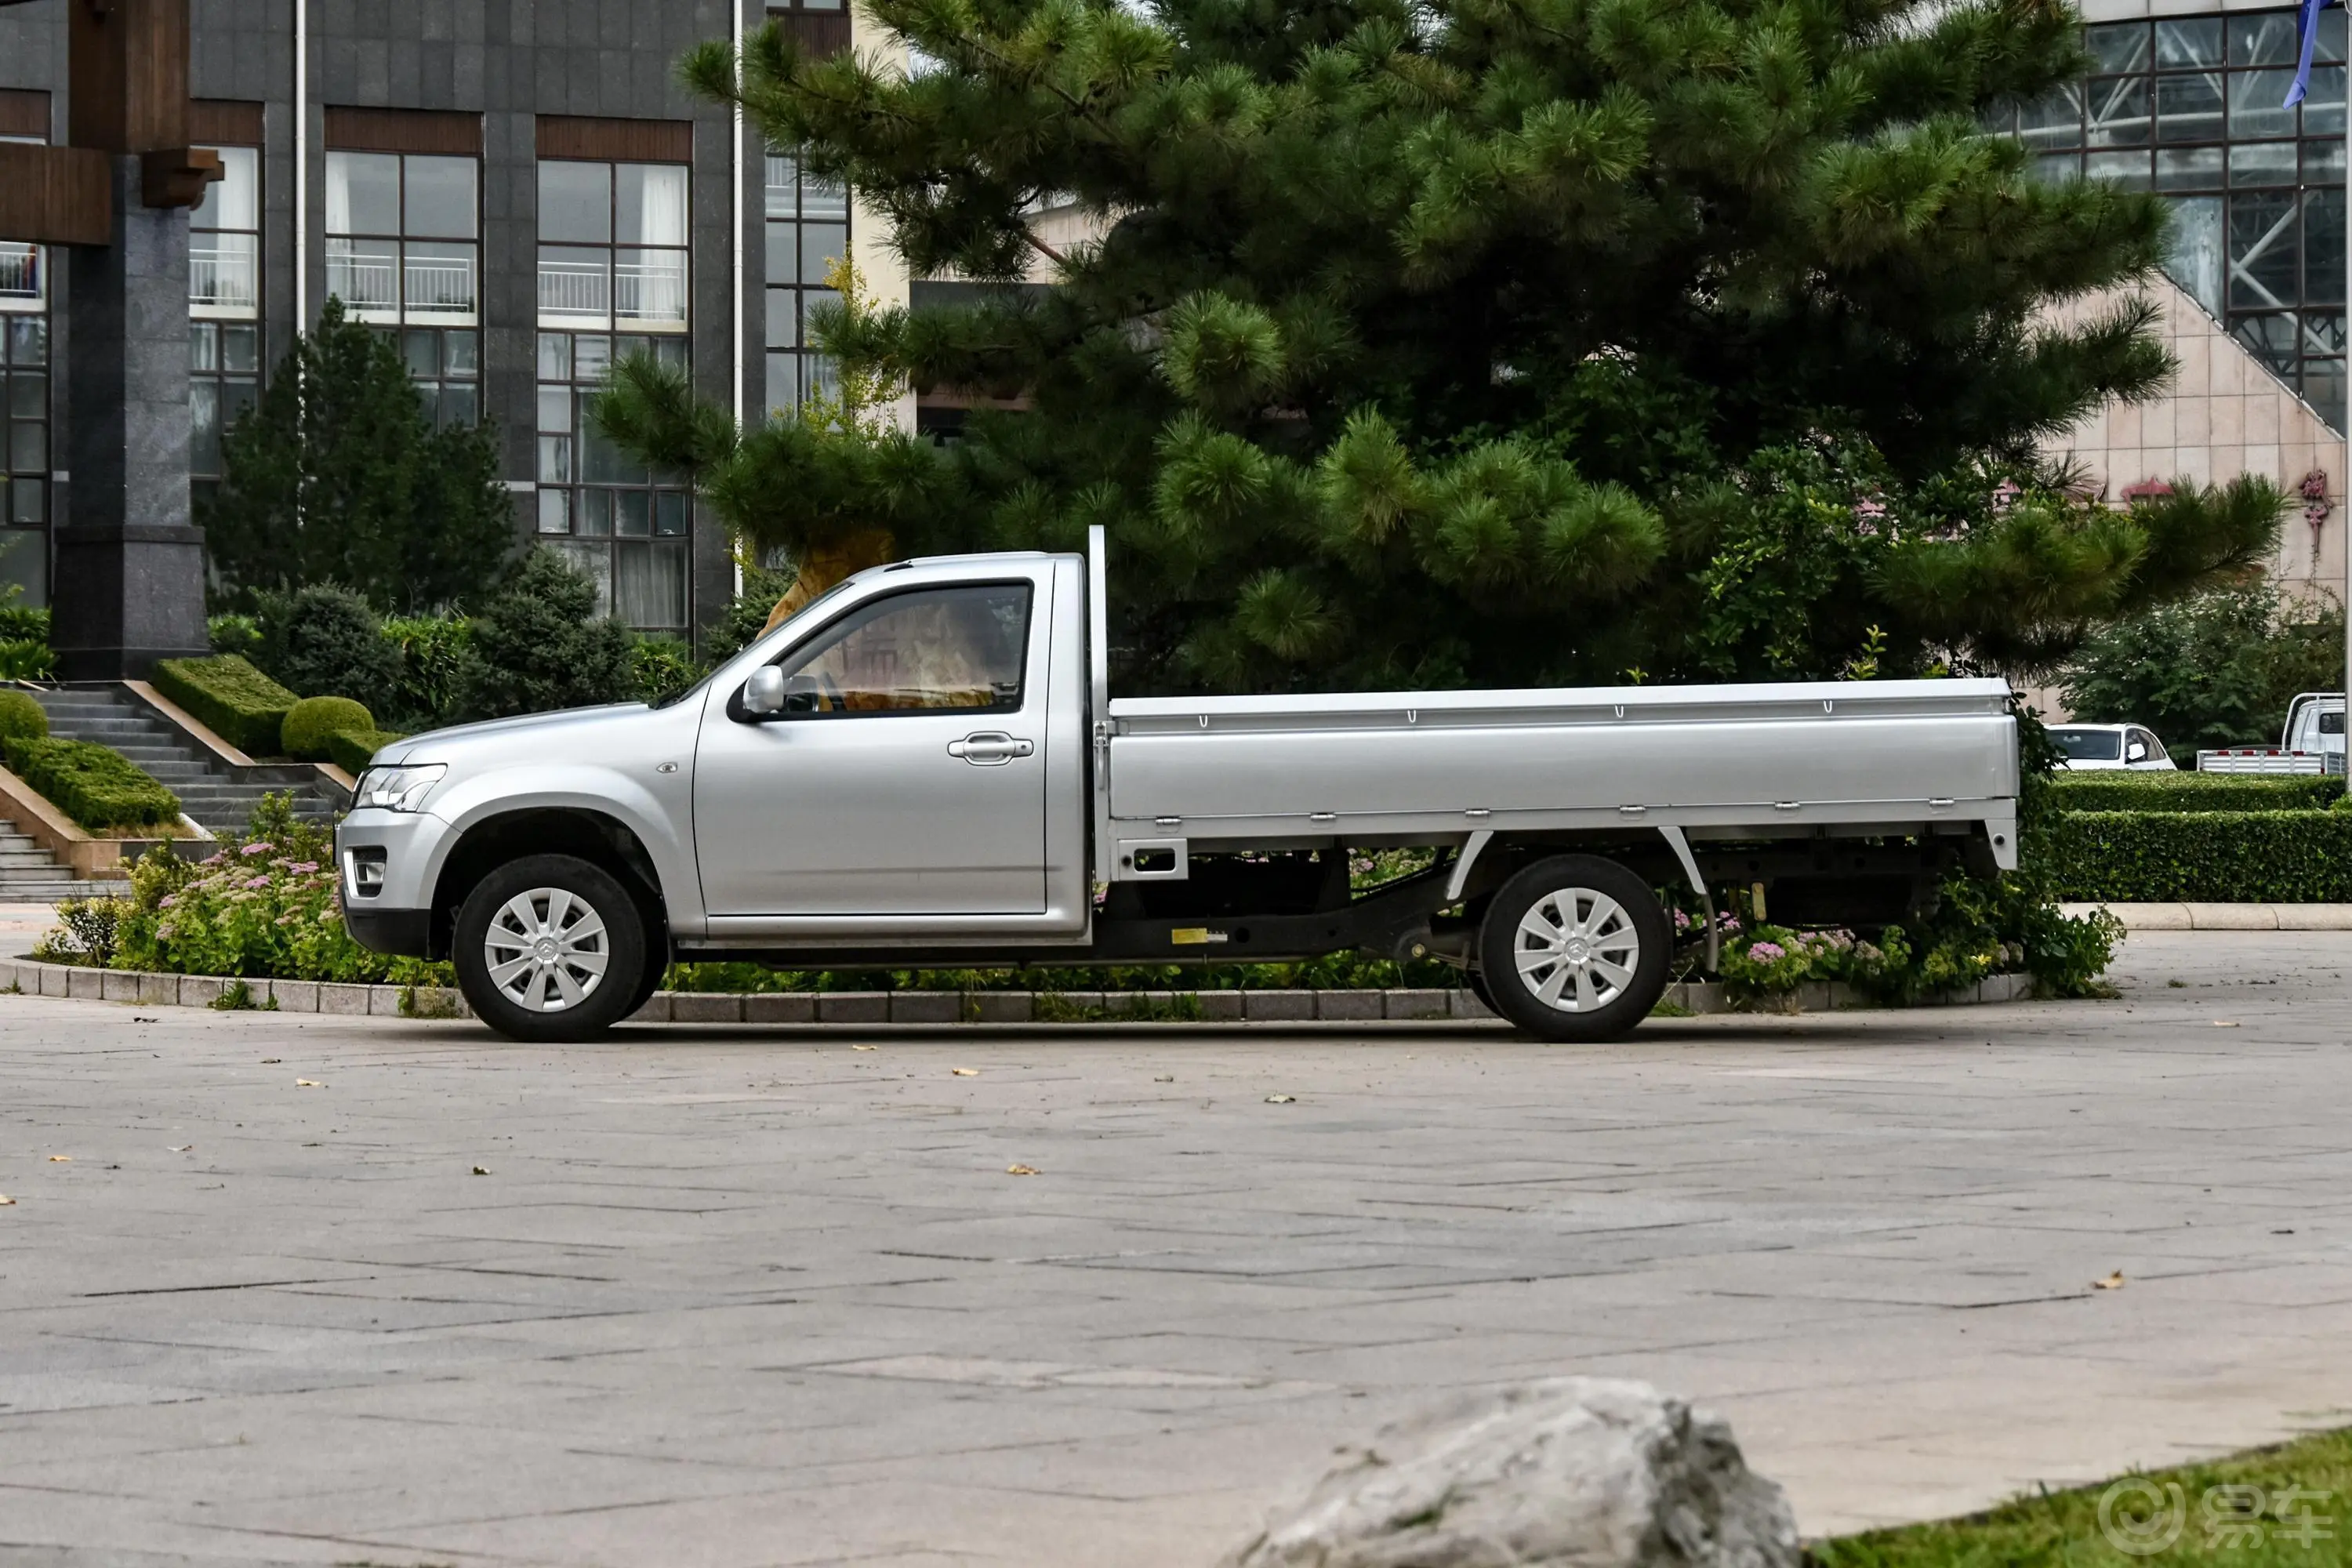 神骐F30单排 1.5L 手动 标准版 3米货箱(额载1015)正侧车头向左水平